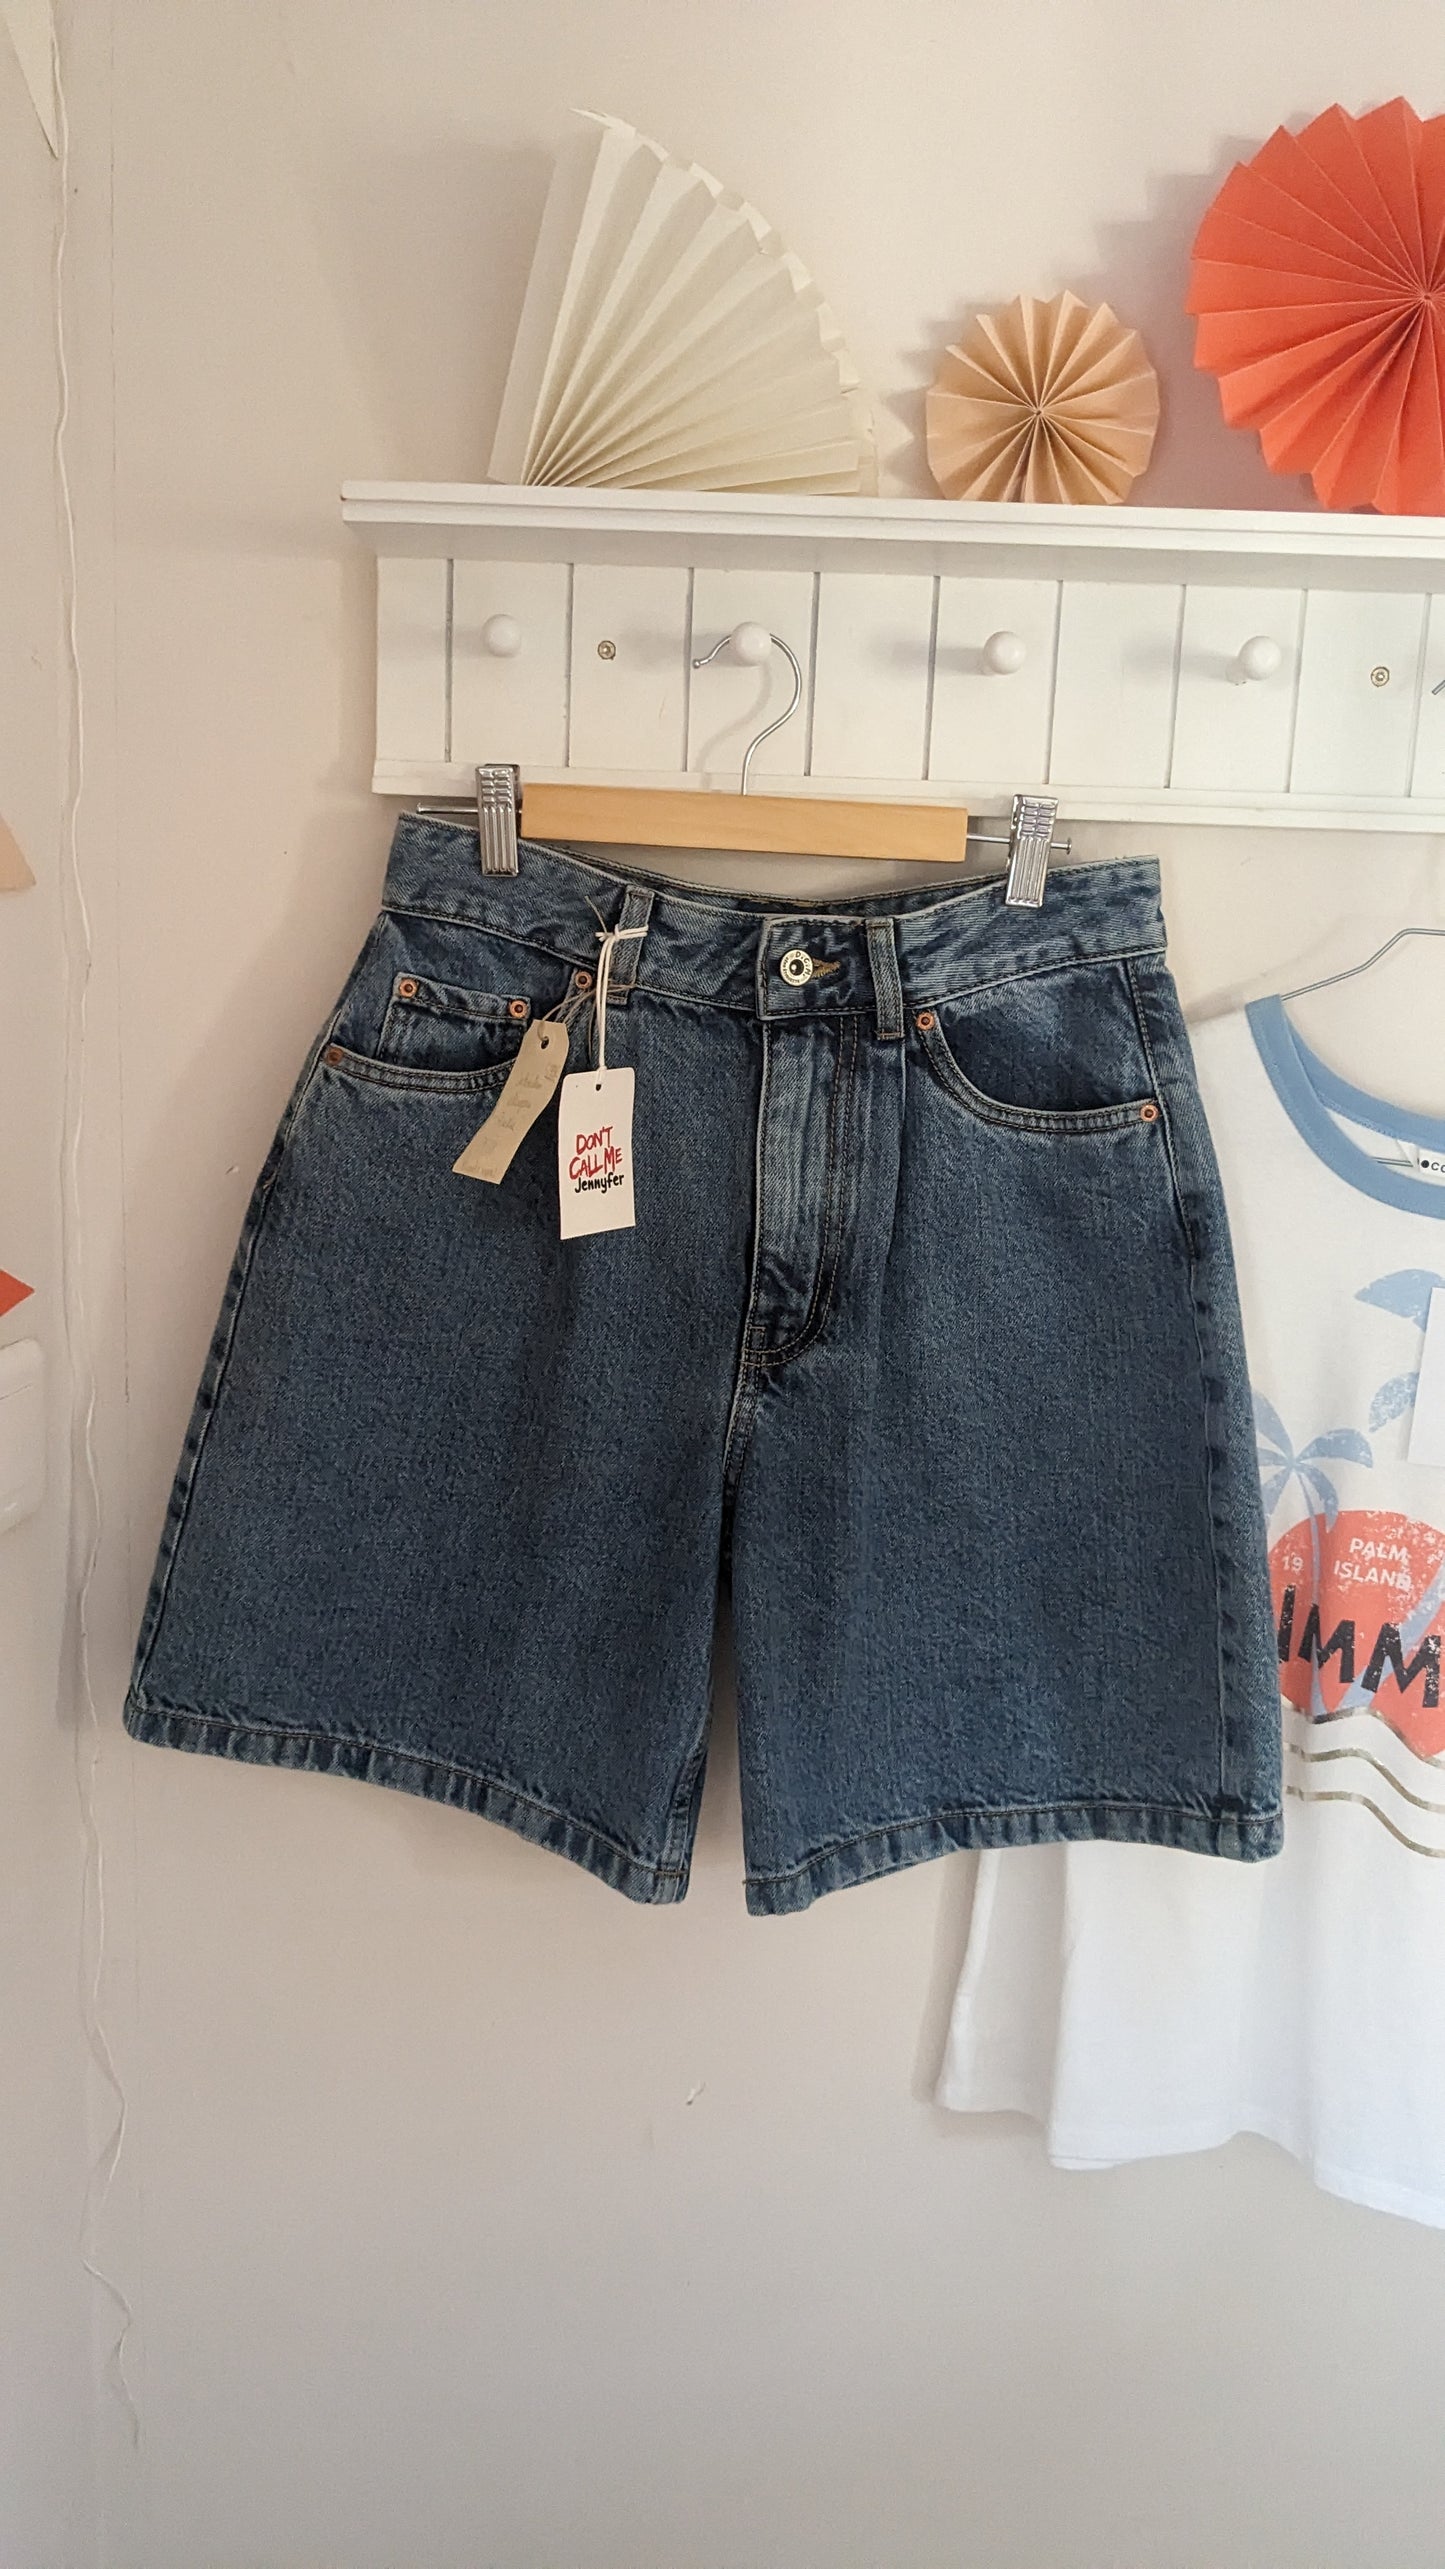 Neuf short bermuda jeans - Jennyfer - 36